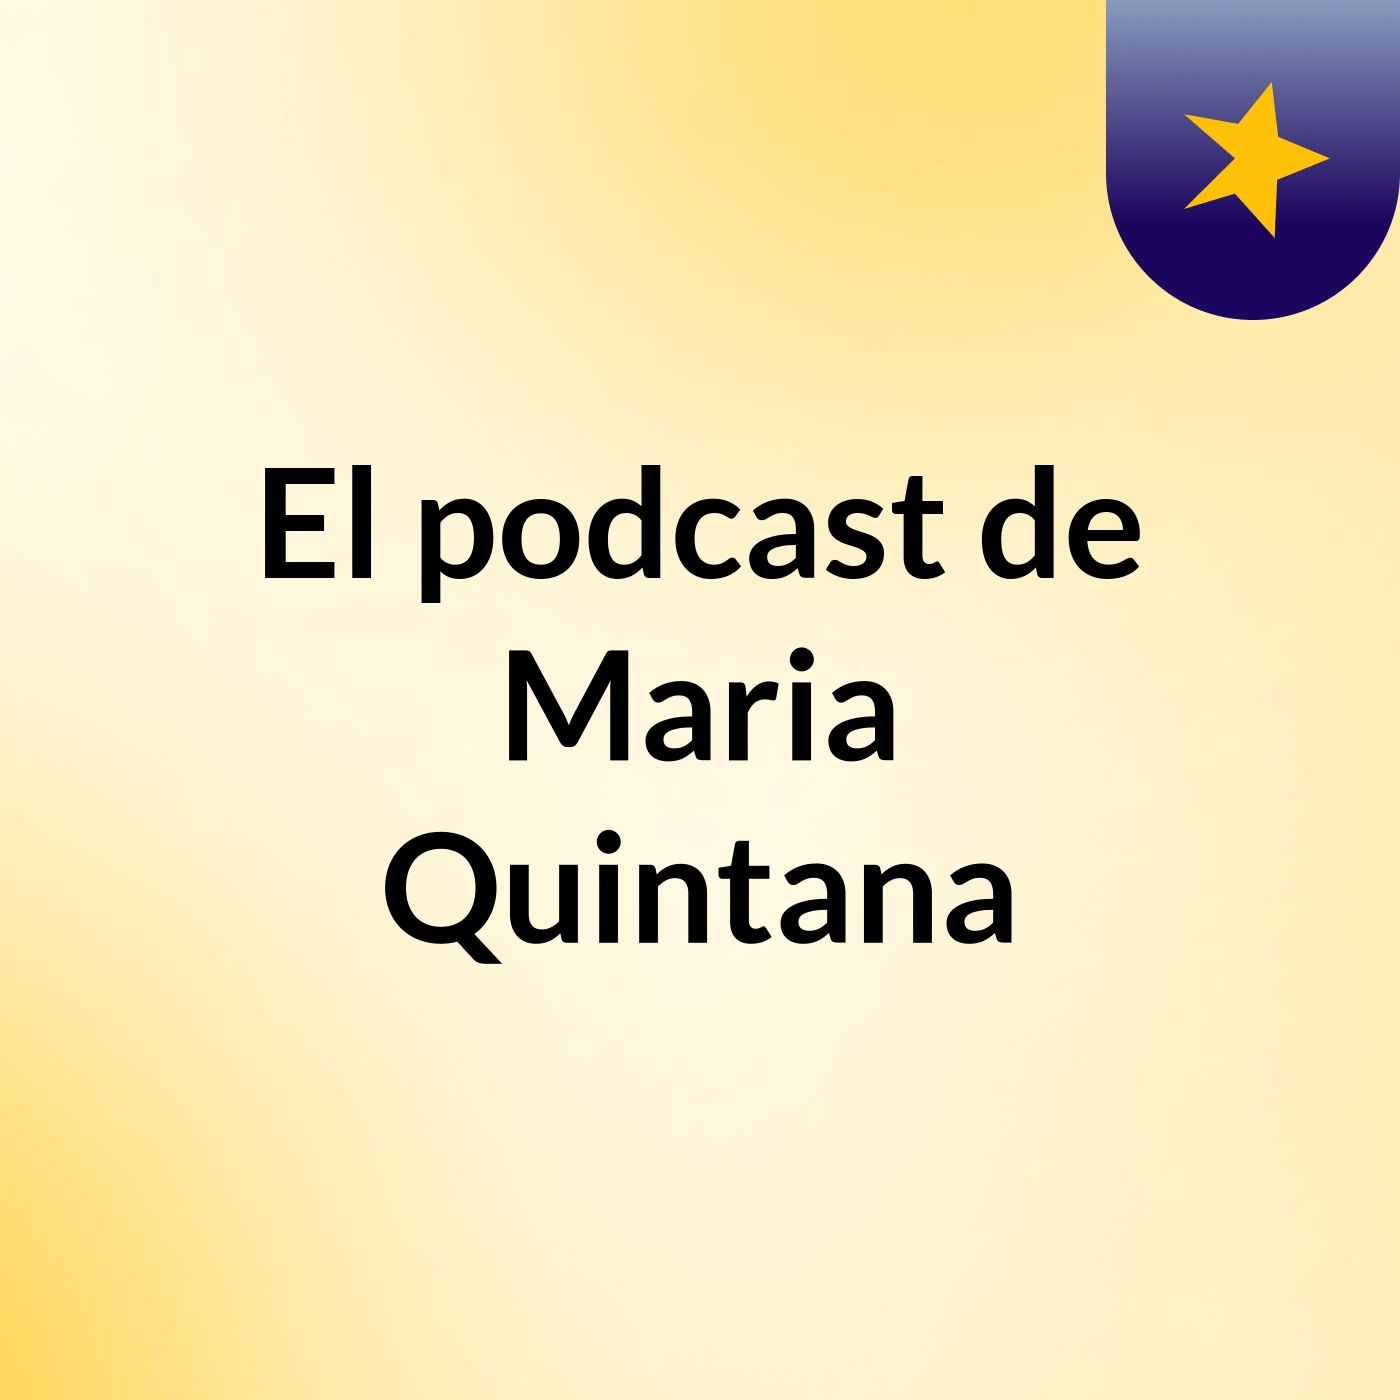 El podcast de Maria Quintana